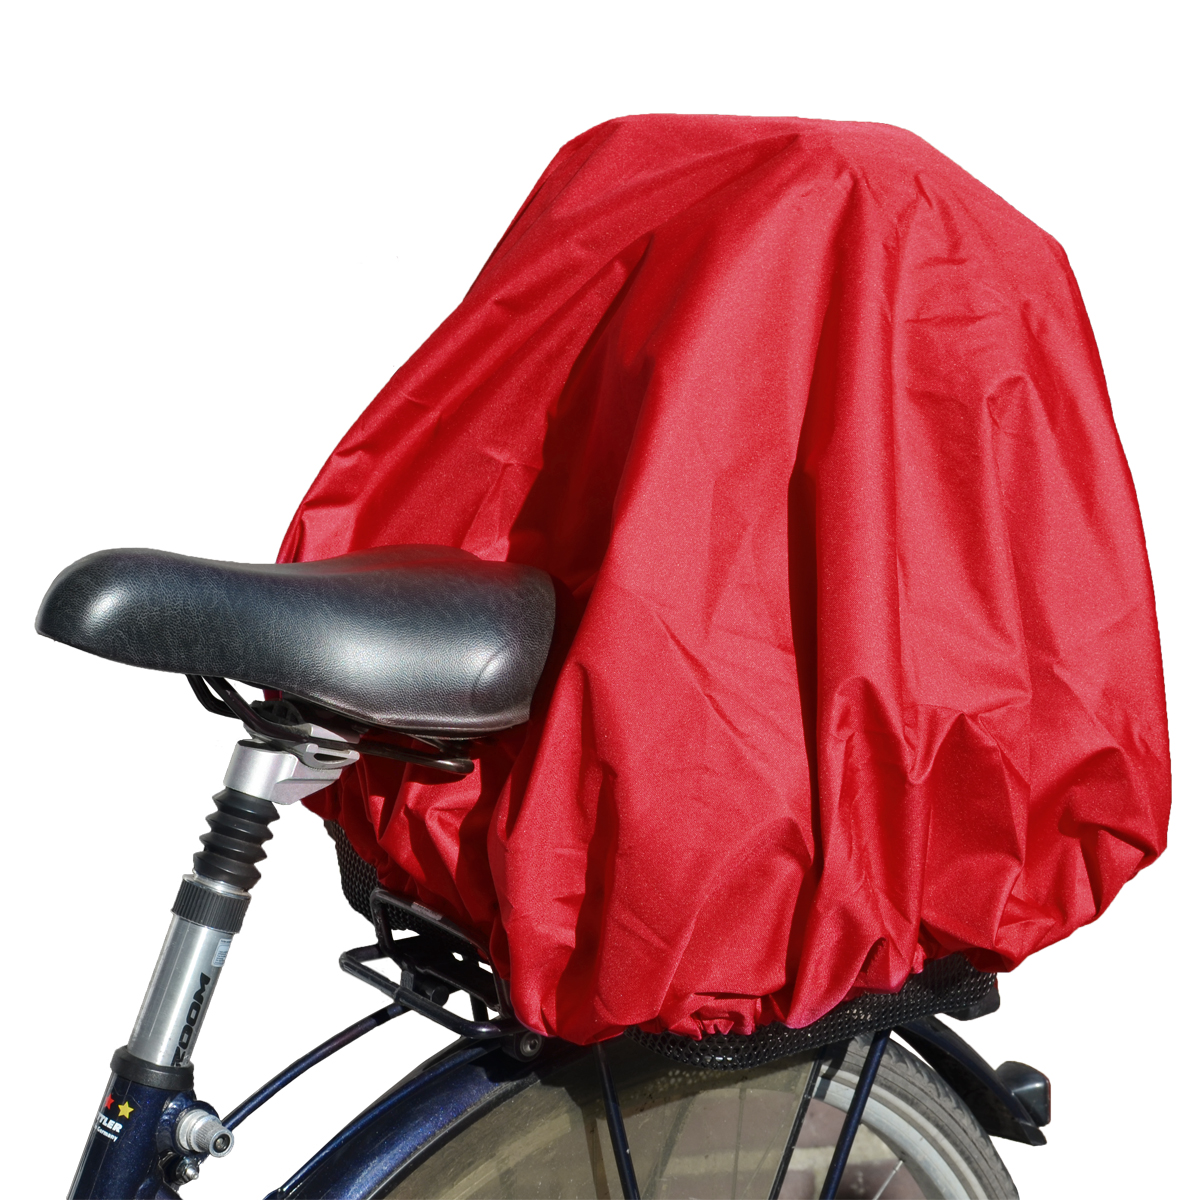 NICE'n'DRY Abdeckung und Regenschutz für Fahrradkorb